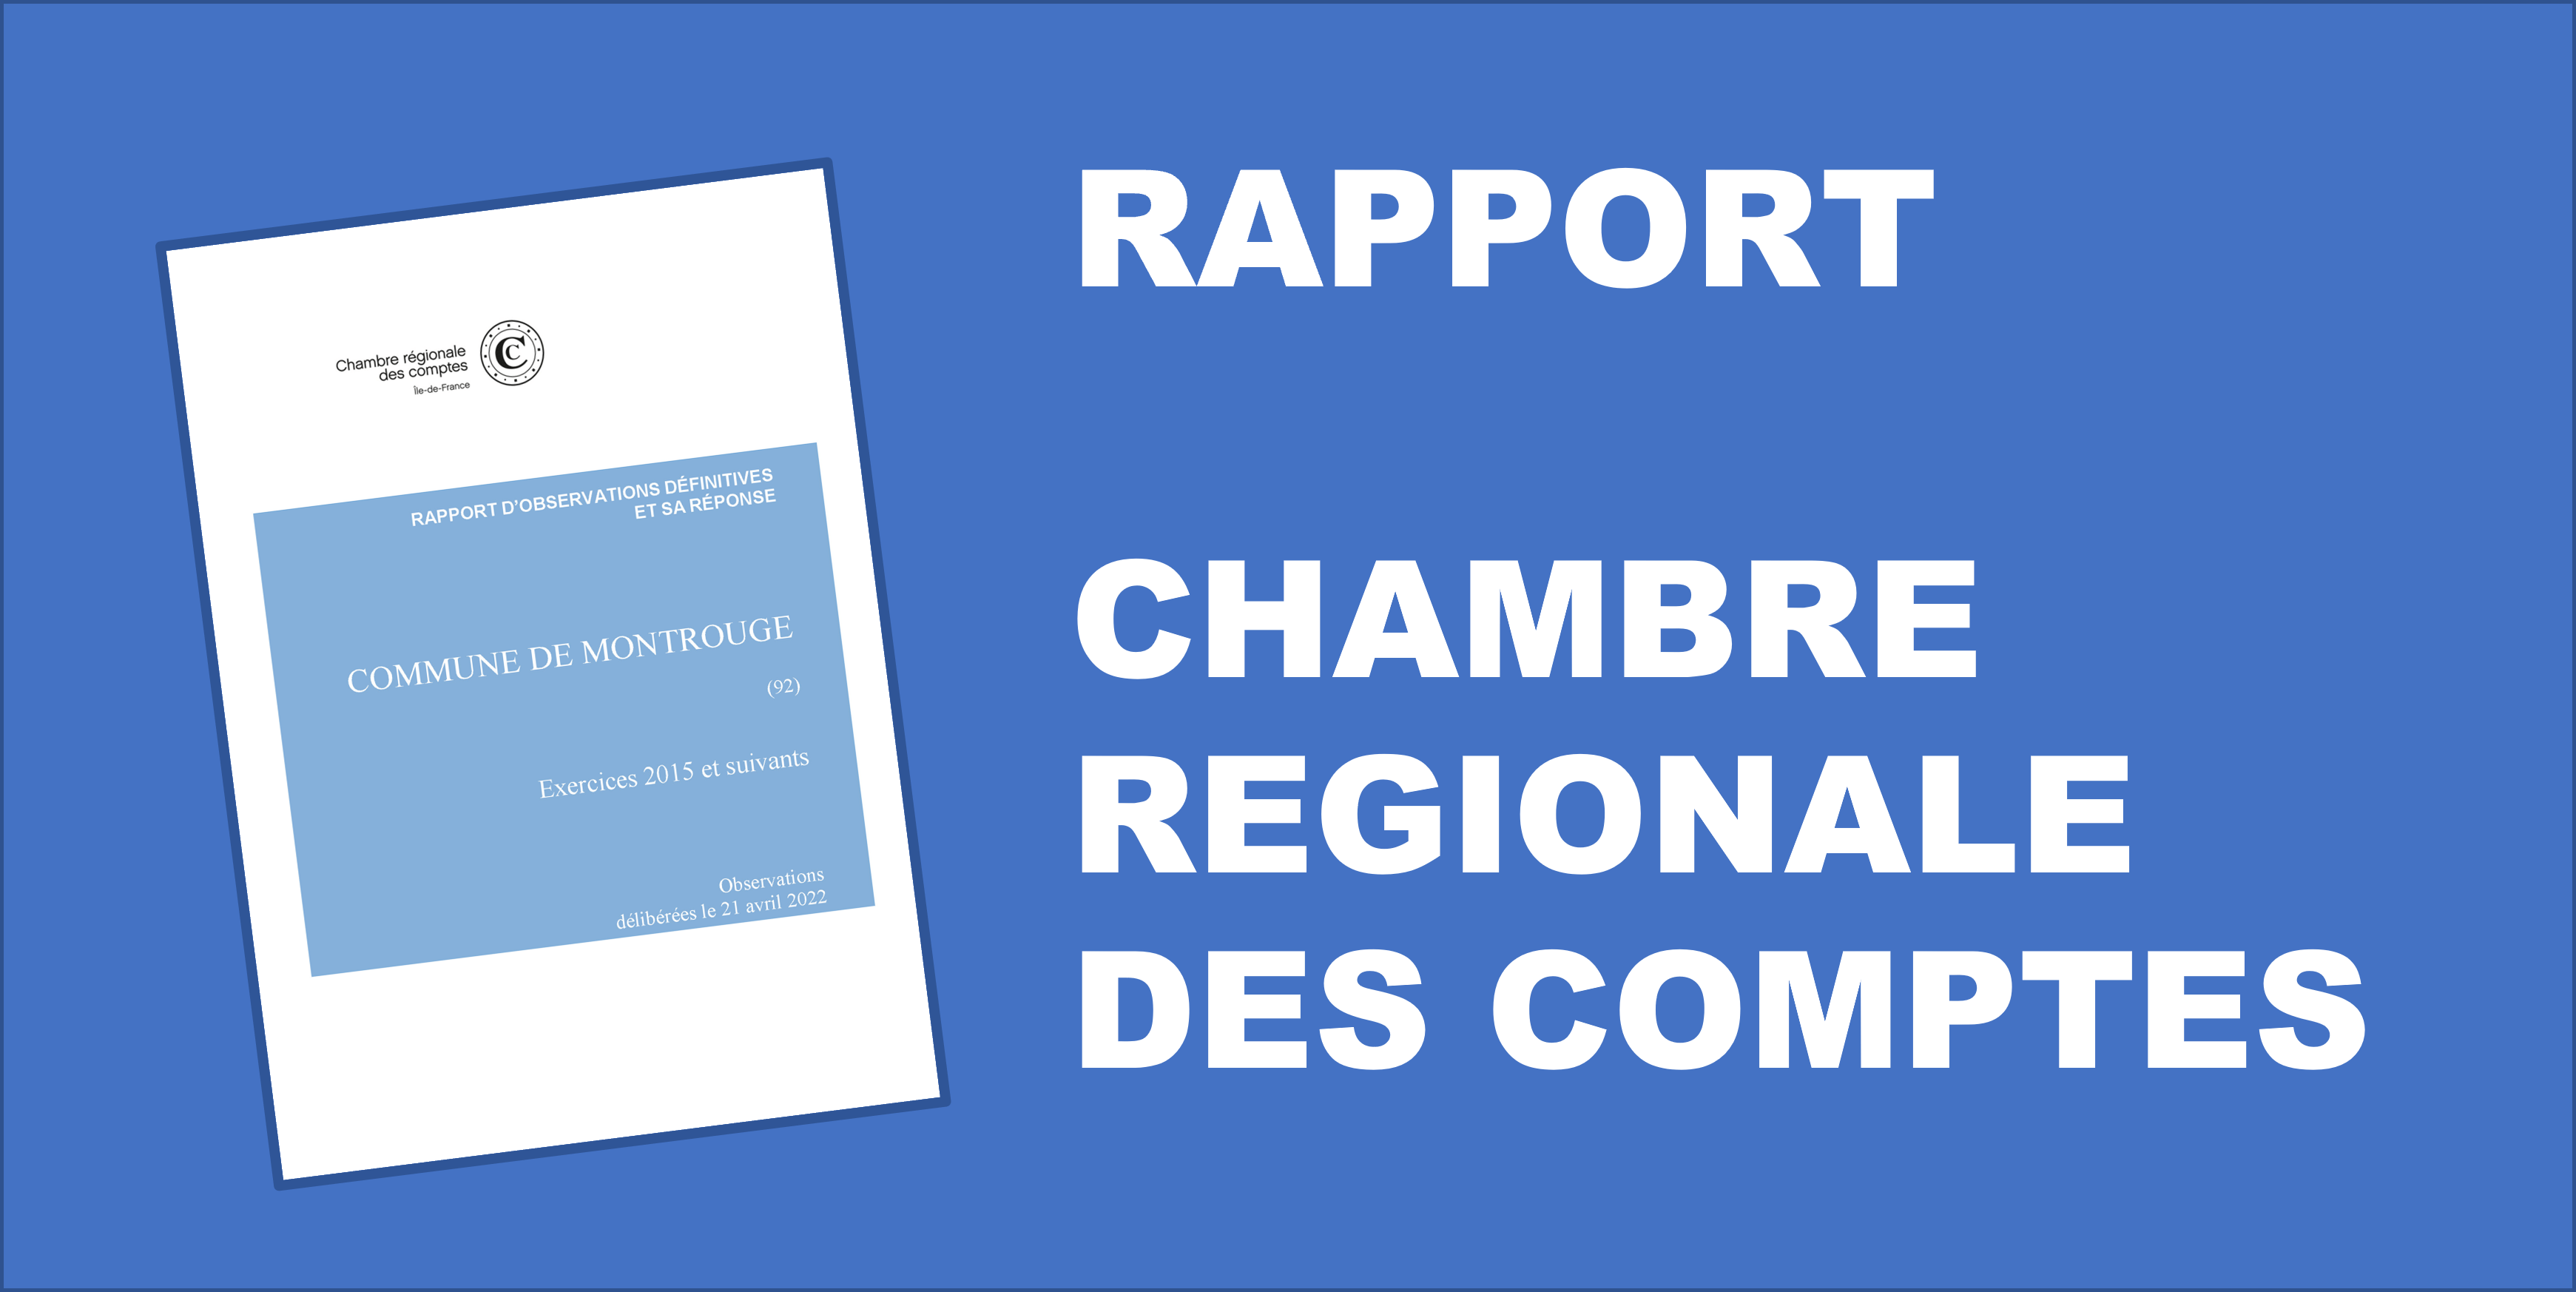 You are currently viewing Rapport d’observations définitives de la Chambre régionale des comptes d’Ile-de-France